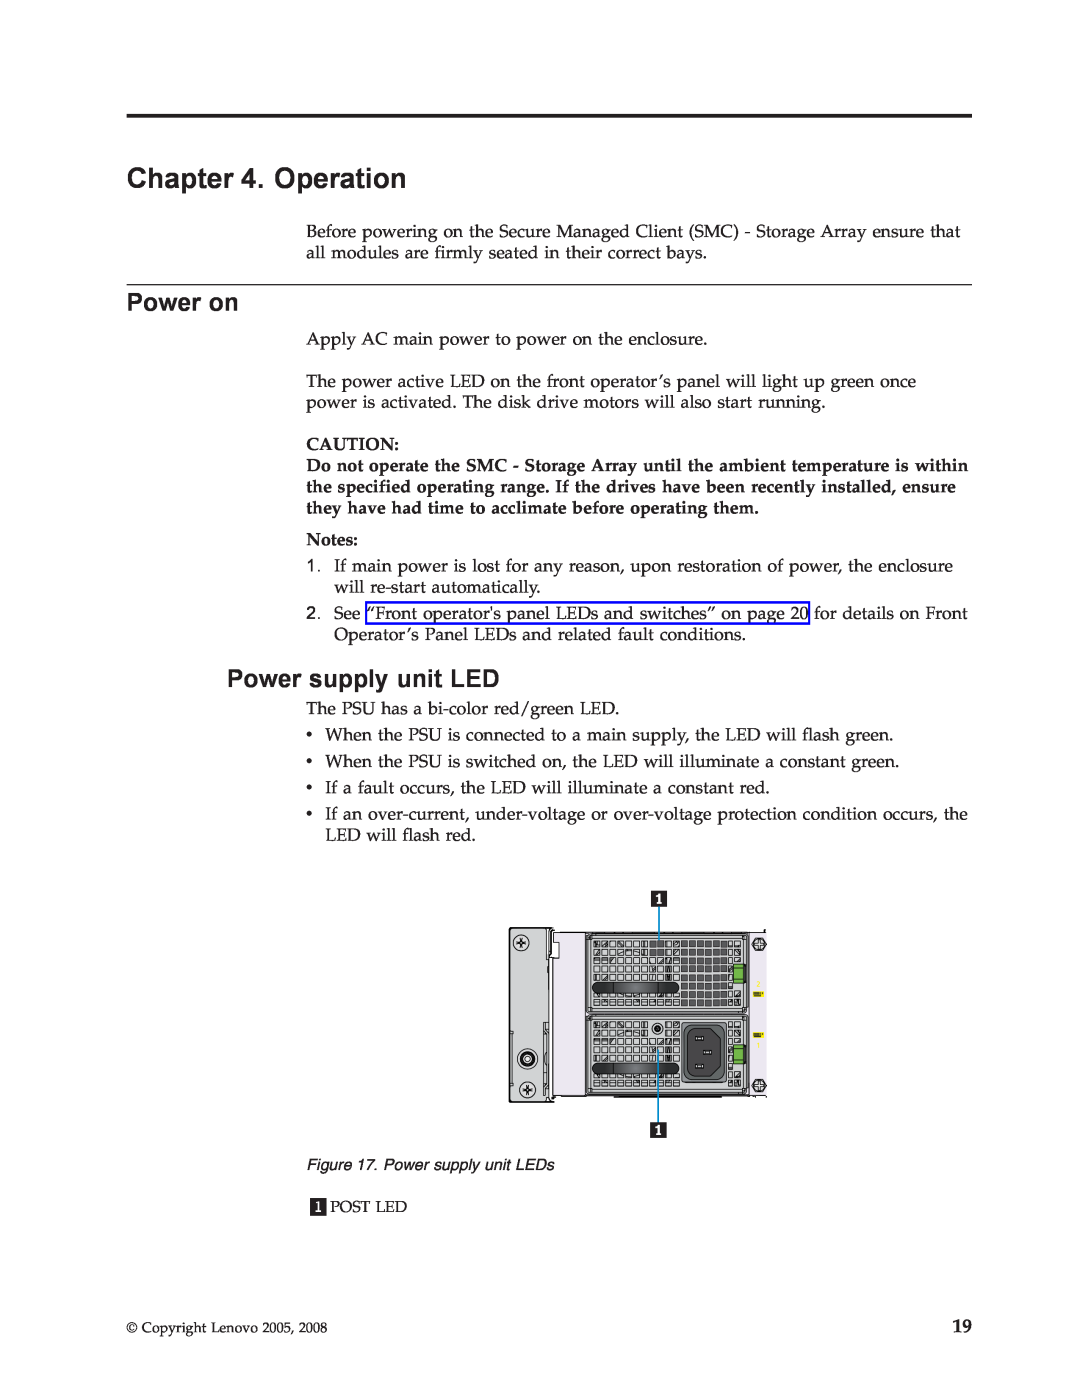 Lenovo 8332 manual Operation, Power on, Power supply unit LED 